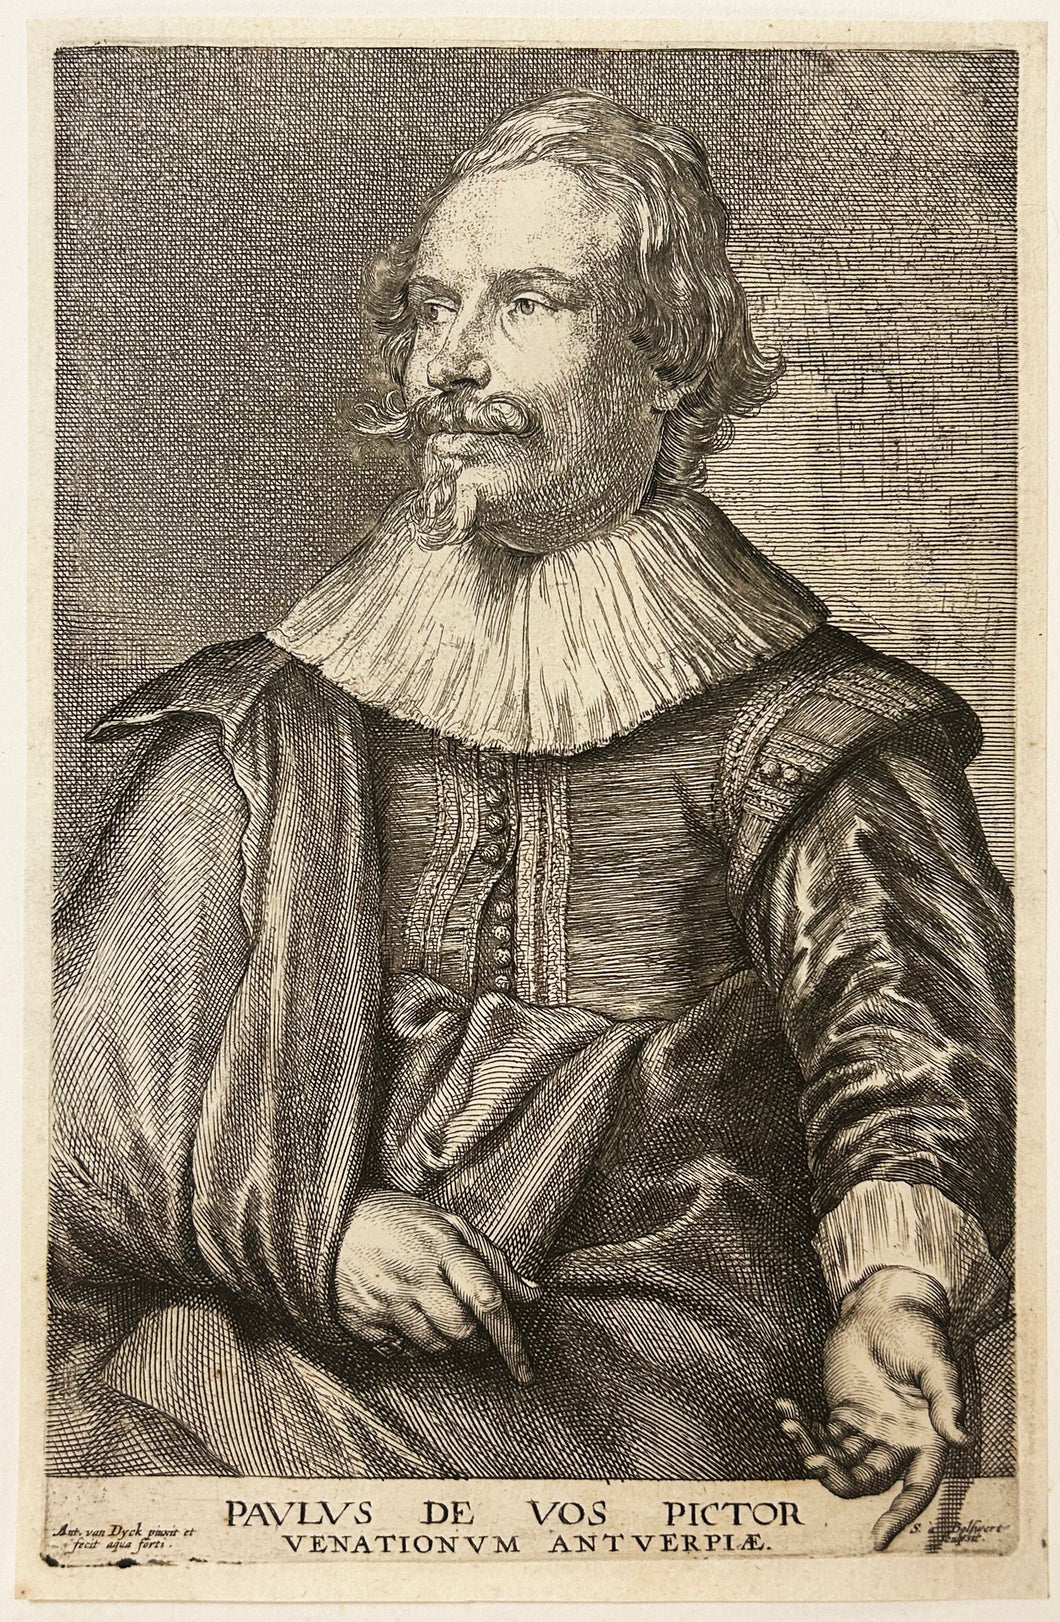 Portrait de Paul de Vos, peintre baroque flamand (c.1592 † 1678).